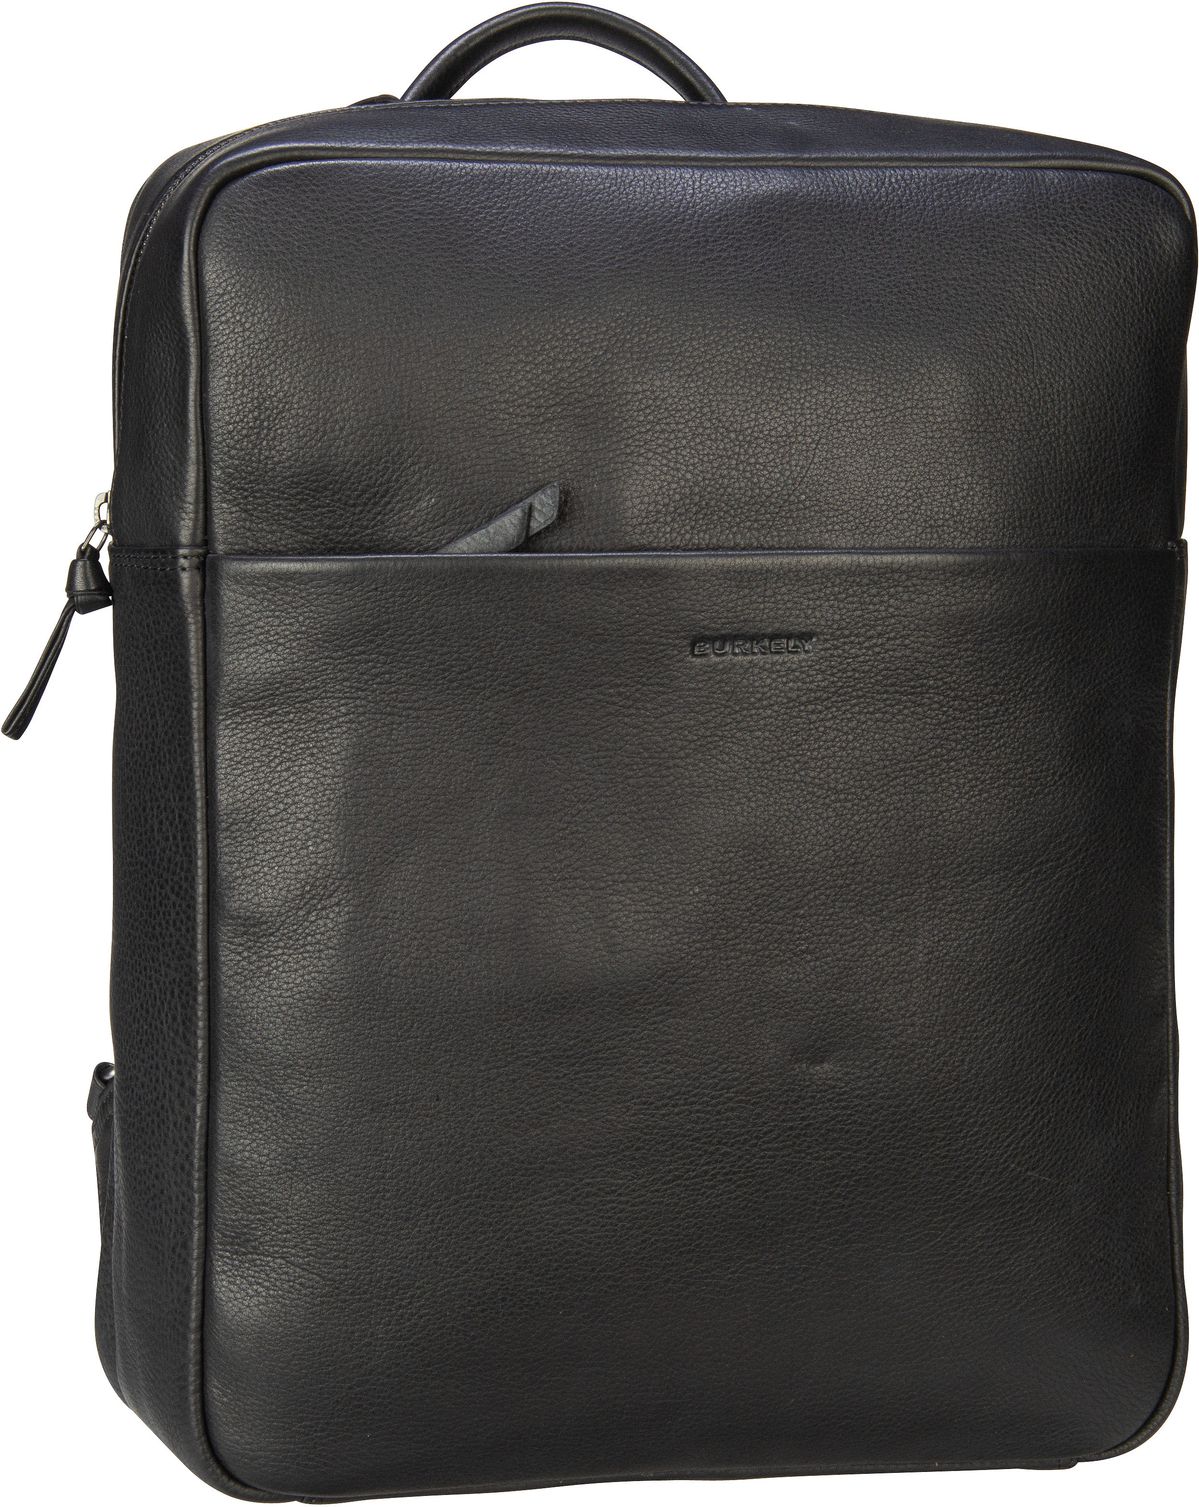 Burkely Just Jolie Backpack 15,6``  in Black (14.1 Liter), Rucksack / Backpack